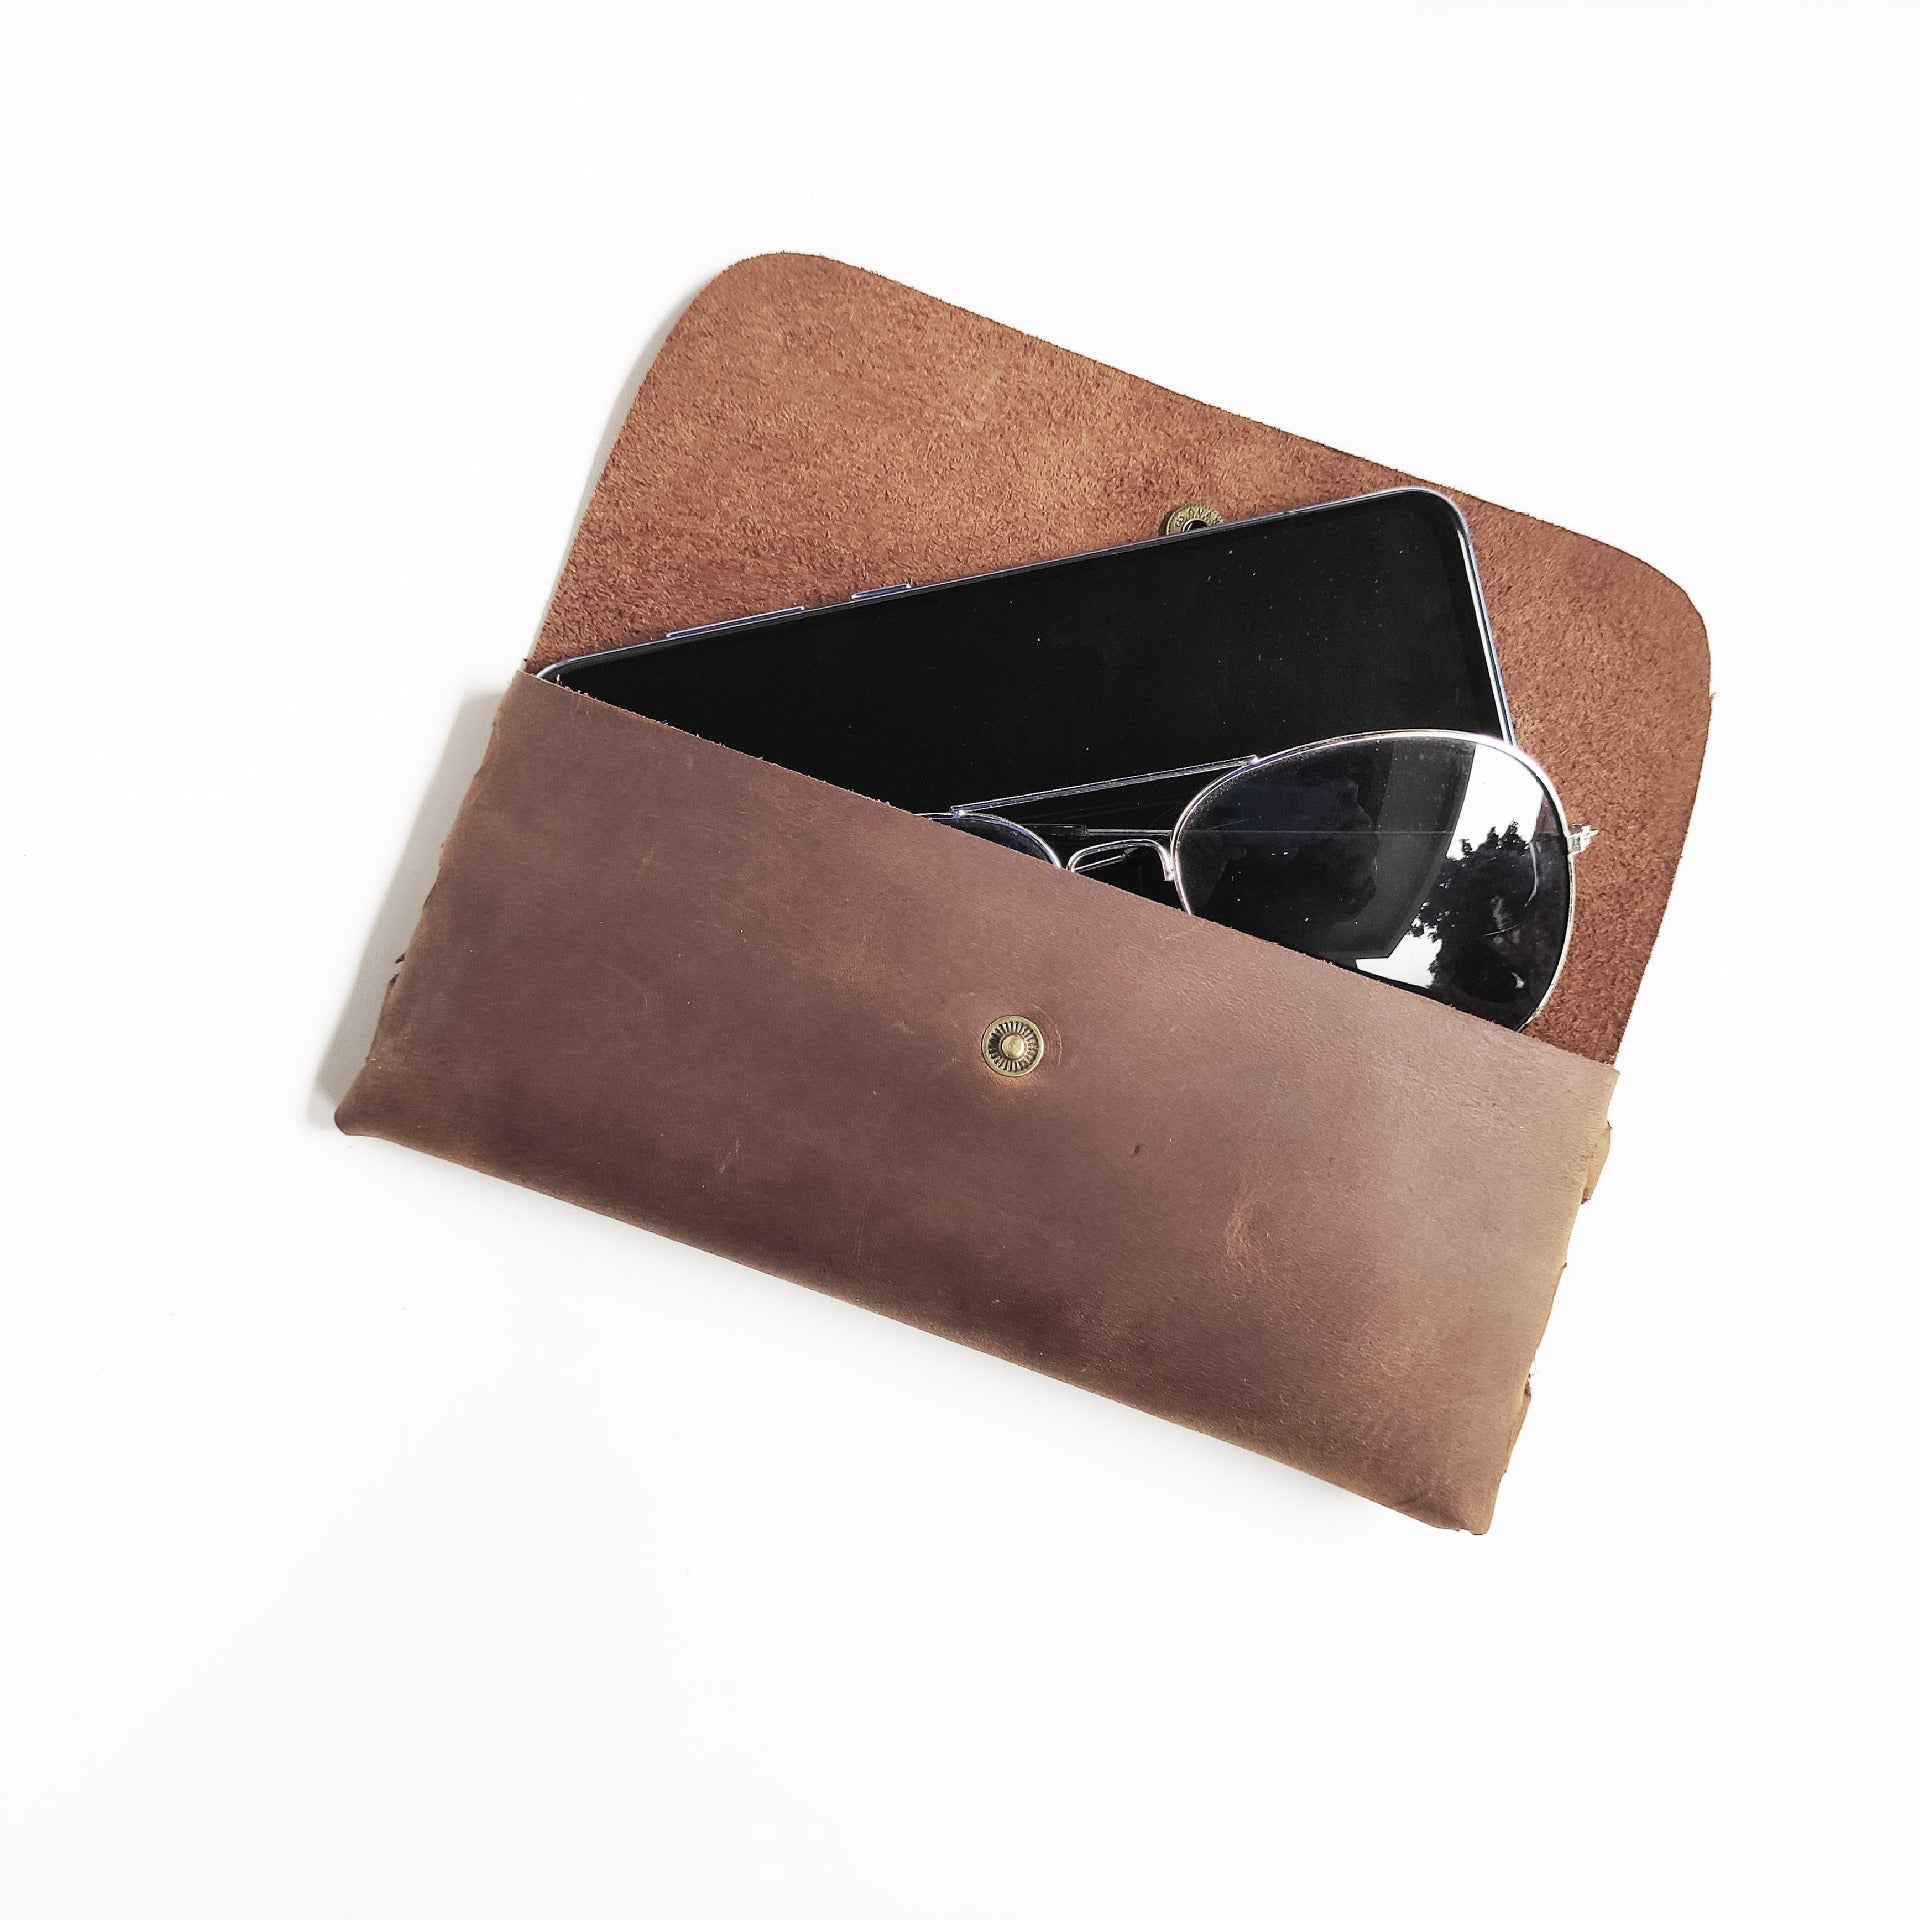 Simple cowhide wallet mobile phone glasses bag